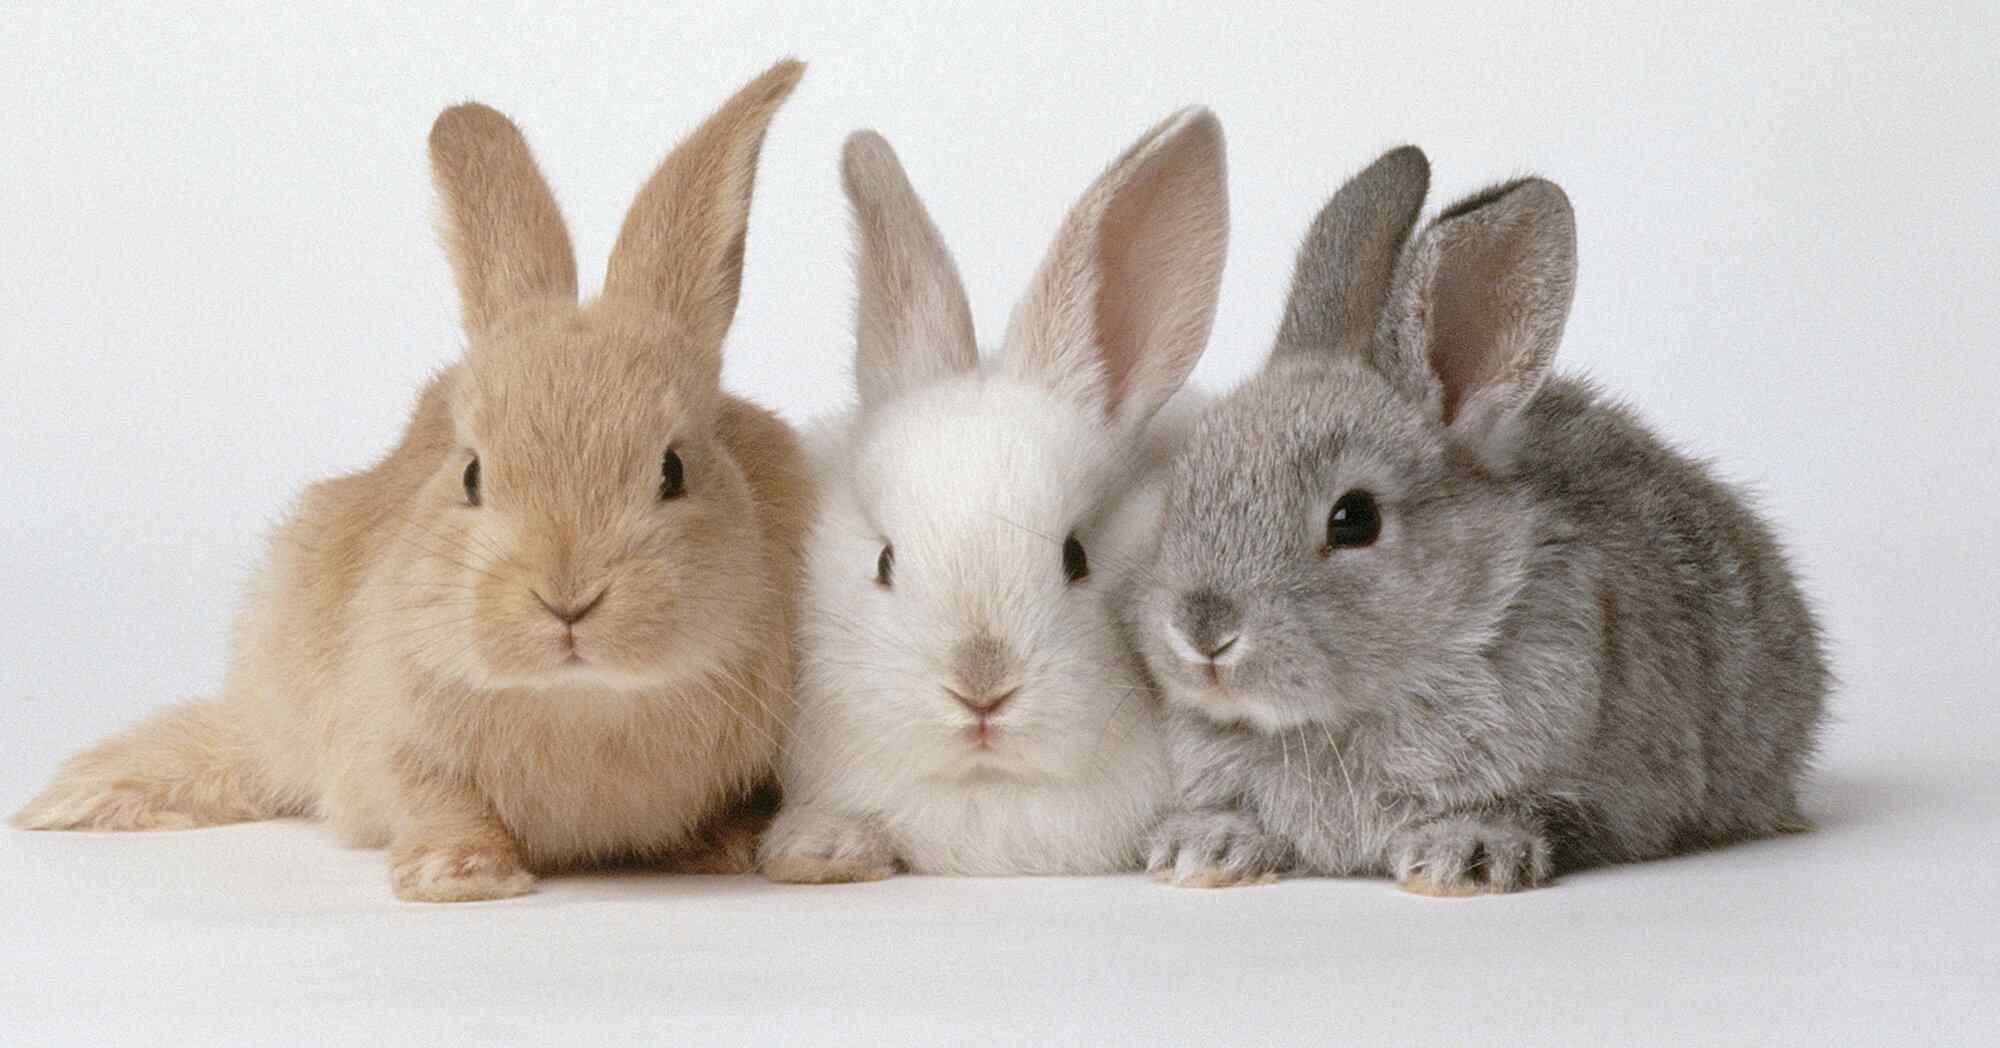 Lop Rabbits Live
